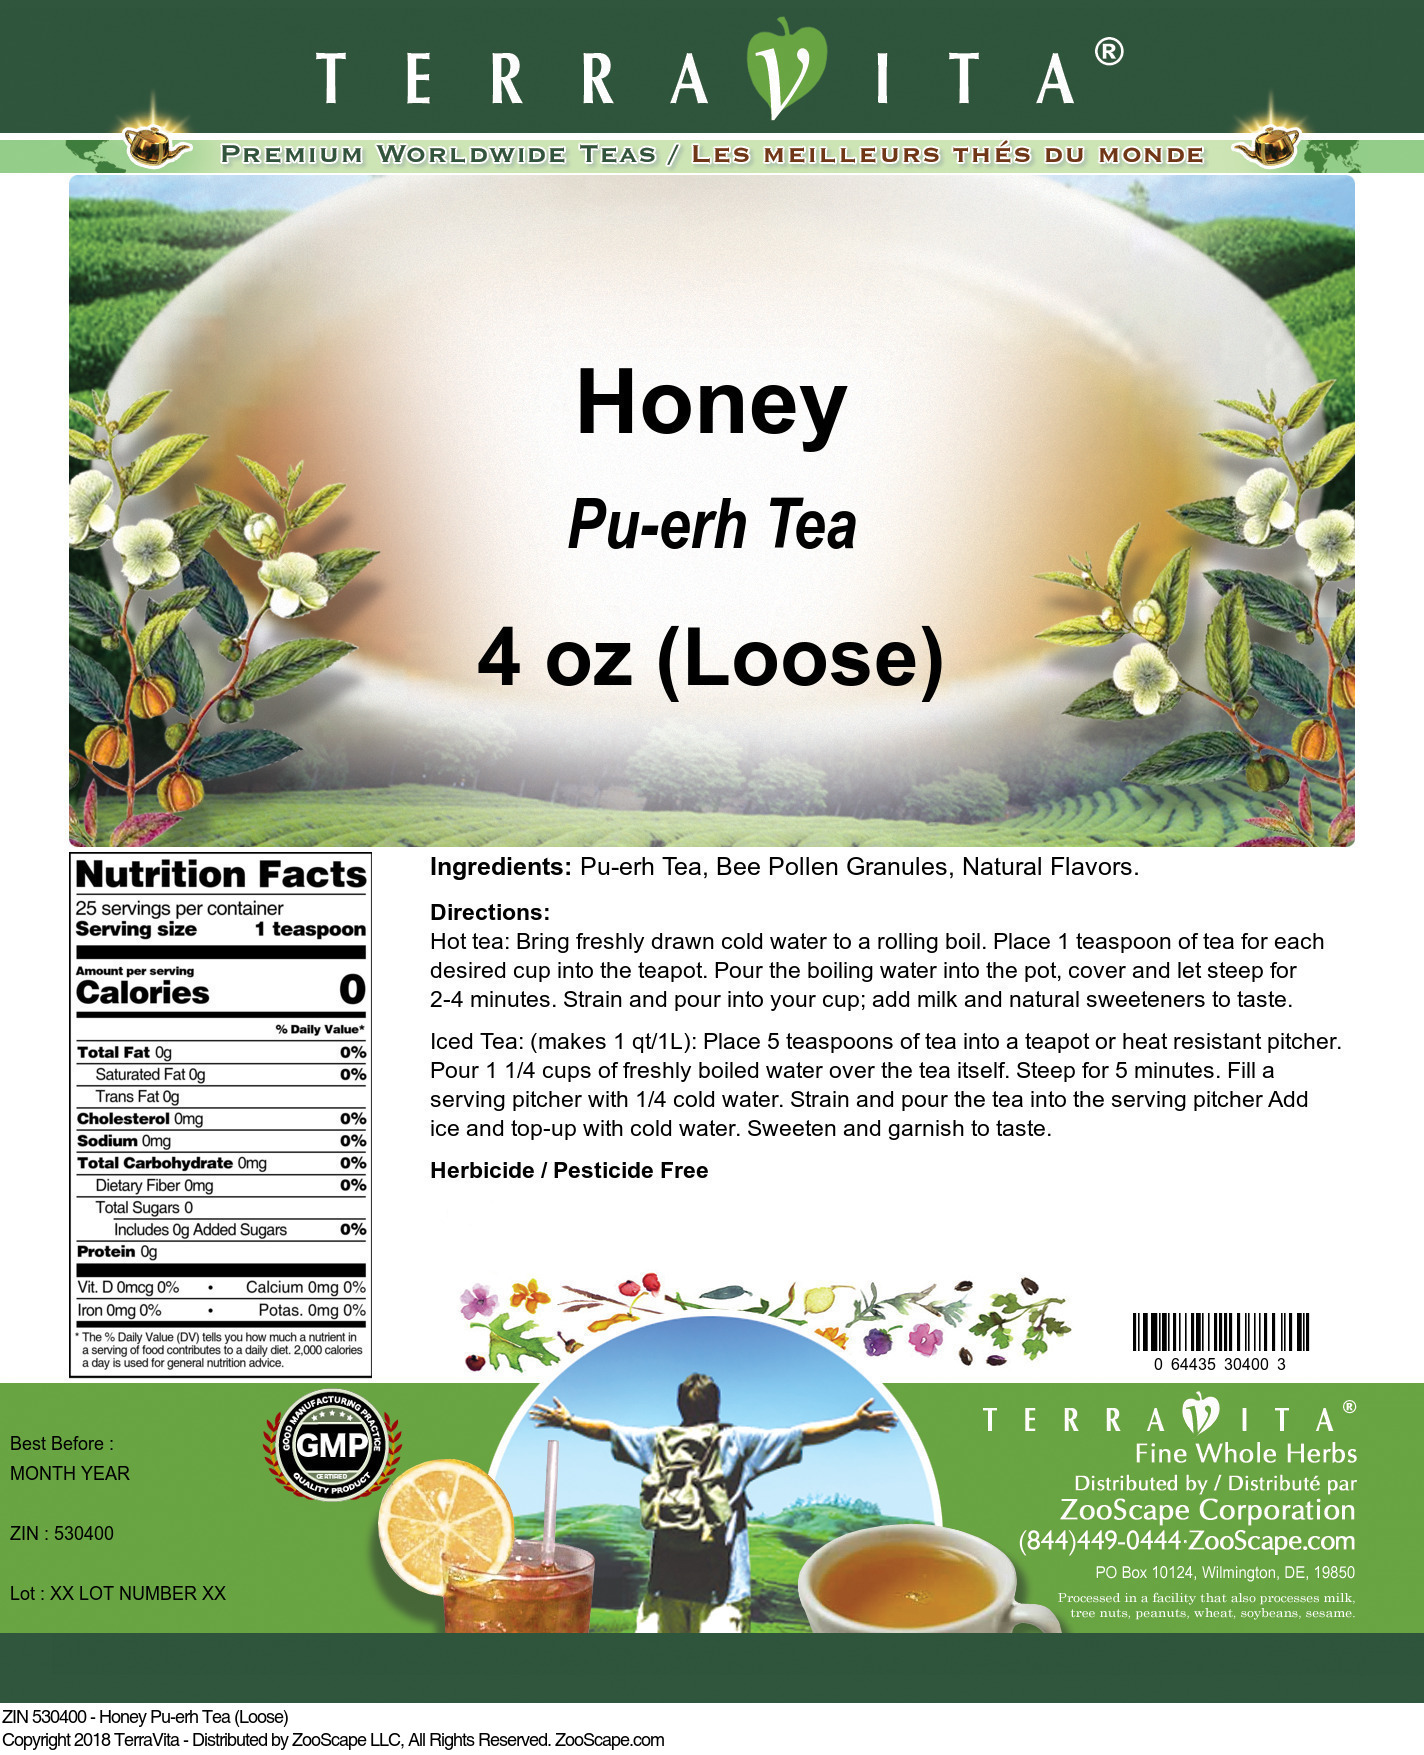 Honey Pu-erh Tea (Loose) - Label